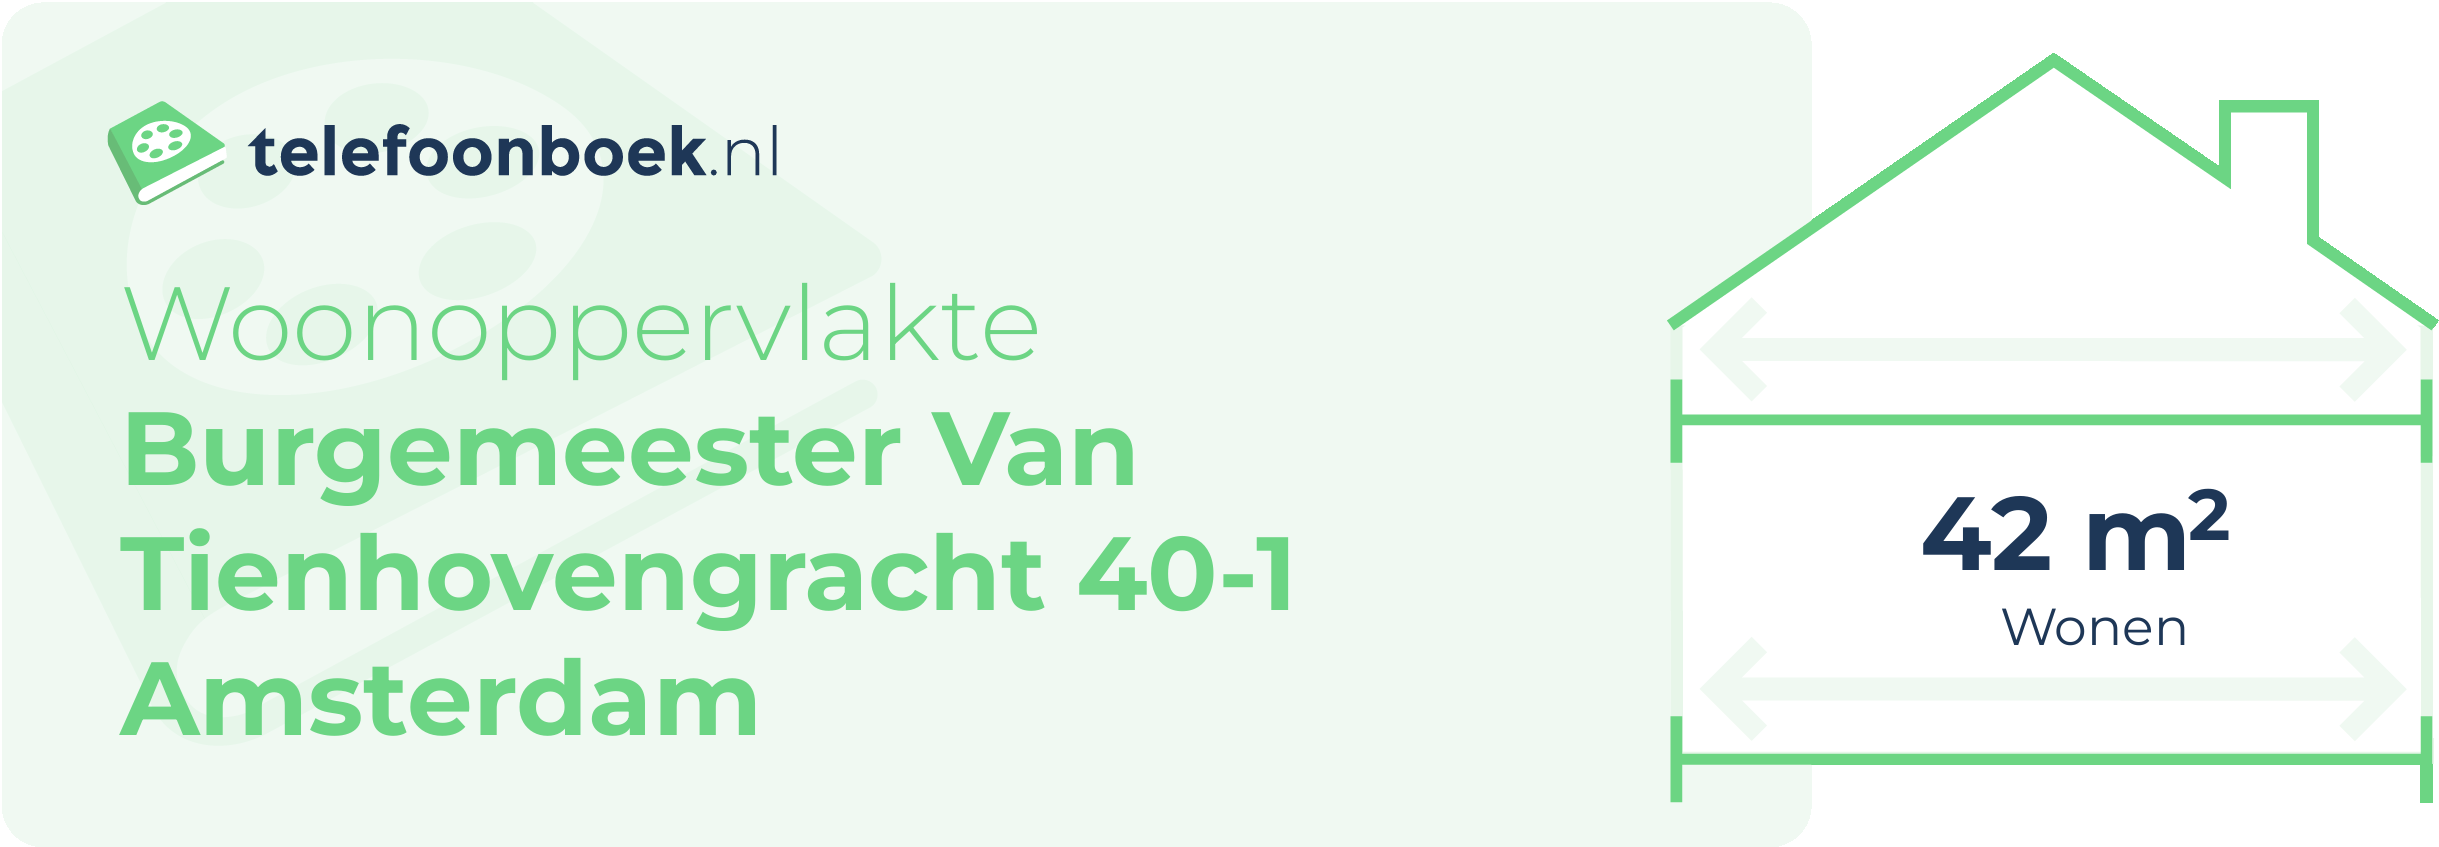 Woonoppervlakte Burgemeester Van Tienhovengracht 40-1 Amsterdam